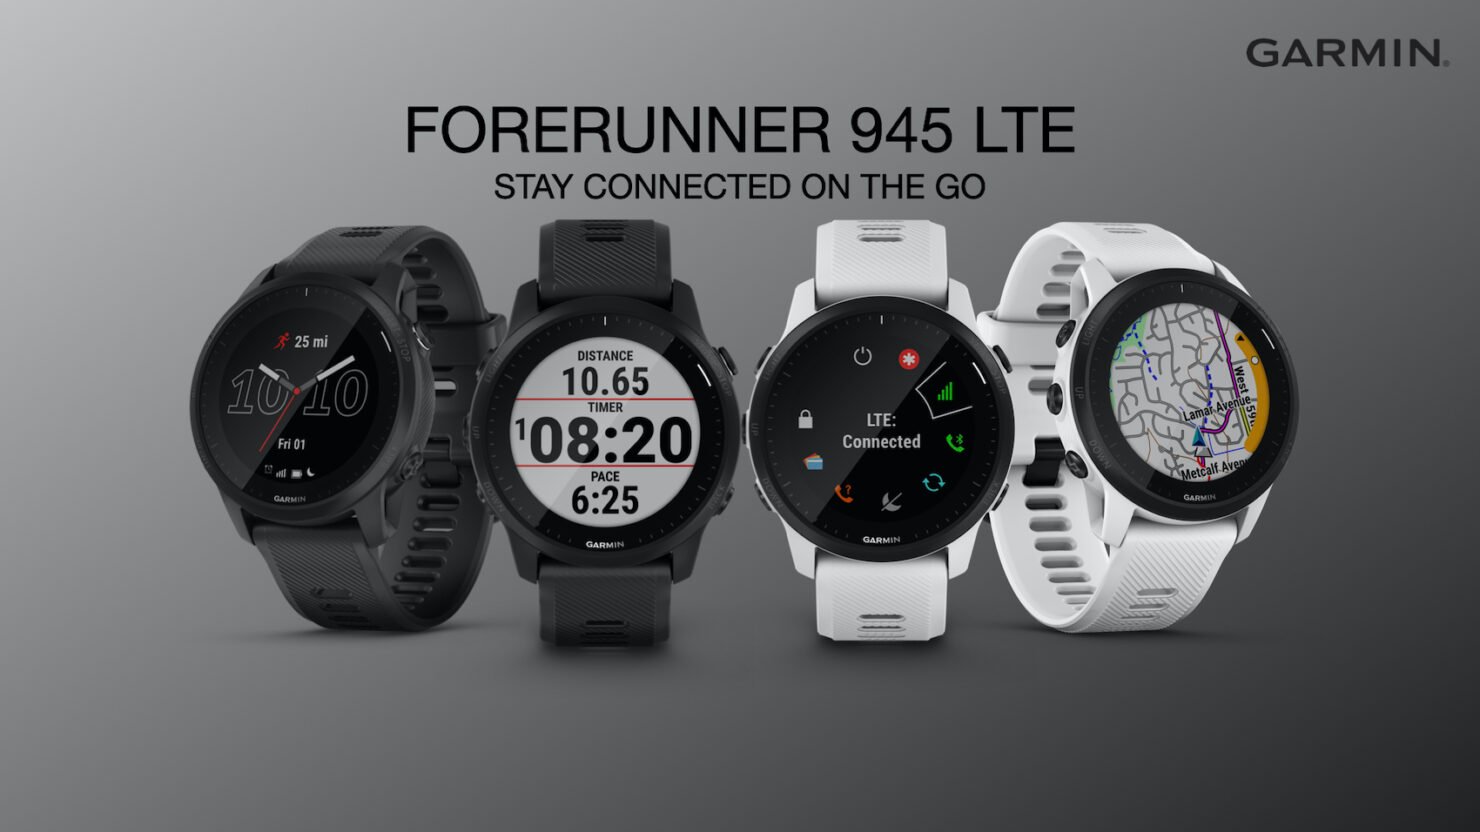 Garmin announces Forerunner 945 LTE, running watch with LTE.